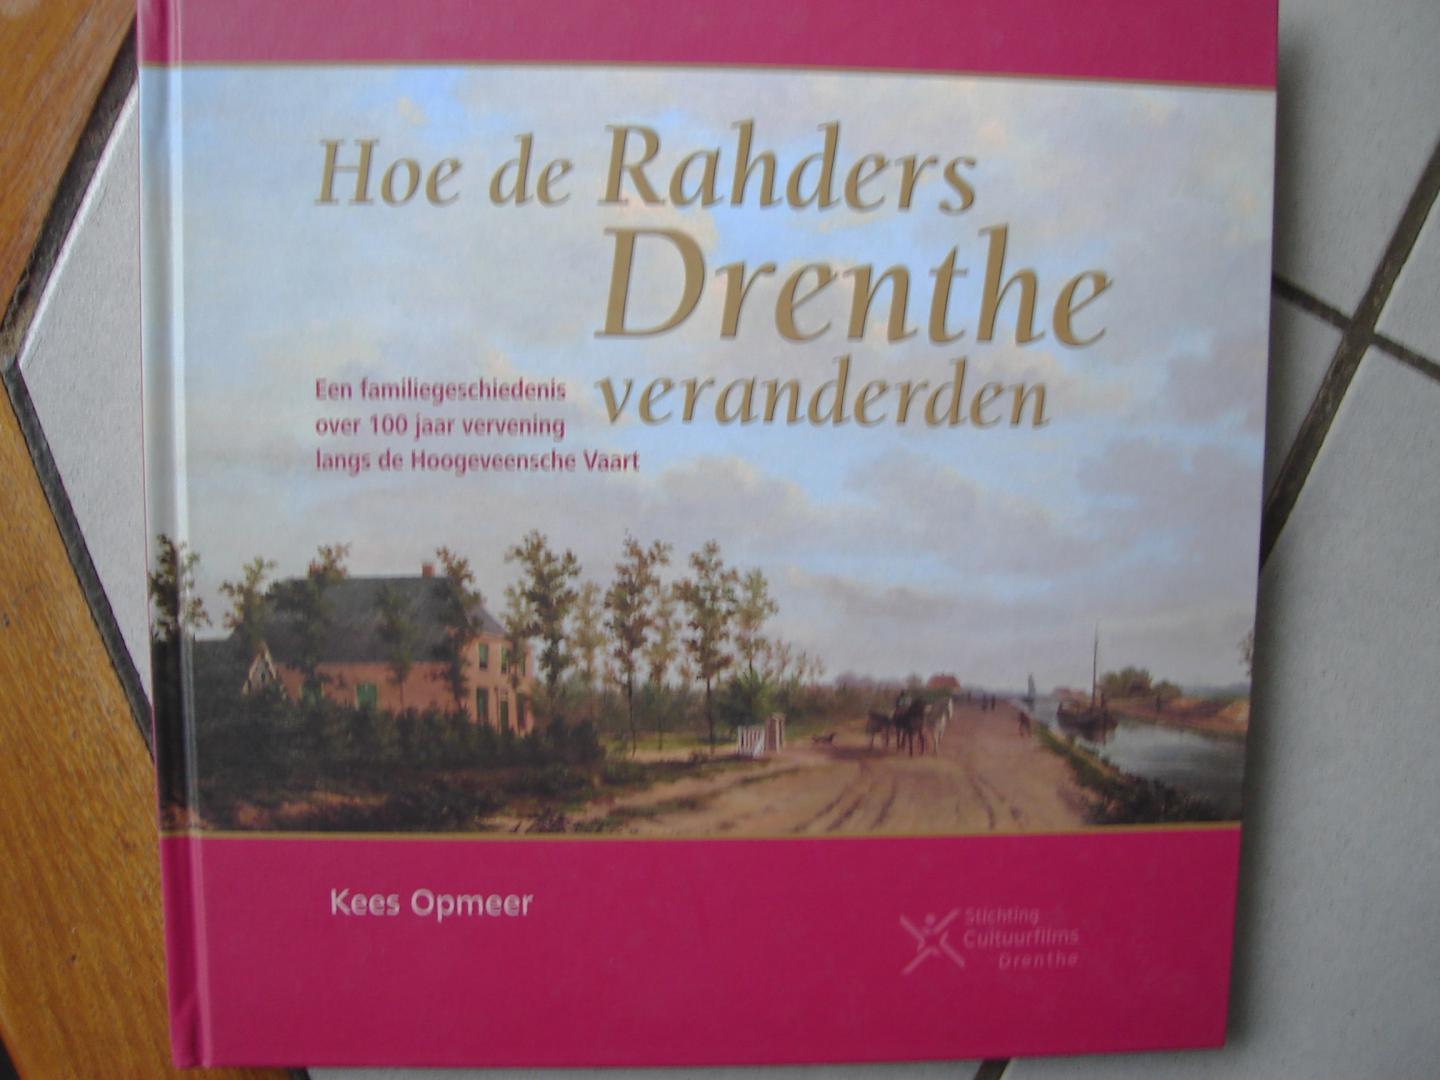 Kees opmeer en Peter Voerman. - Hoe de Rahders drenthe veranderden.een familiegeschiedenis over 100 jaar vervening langs de Hoogeveensche Vaart.